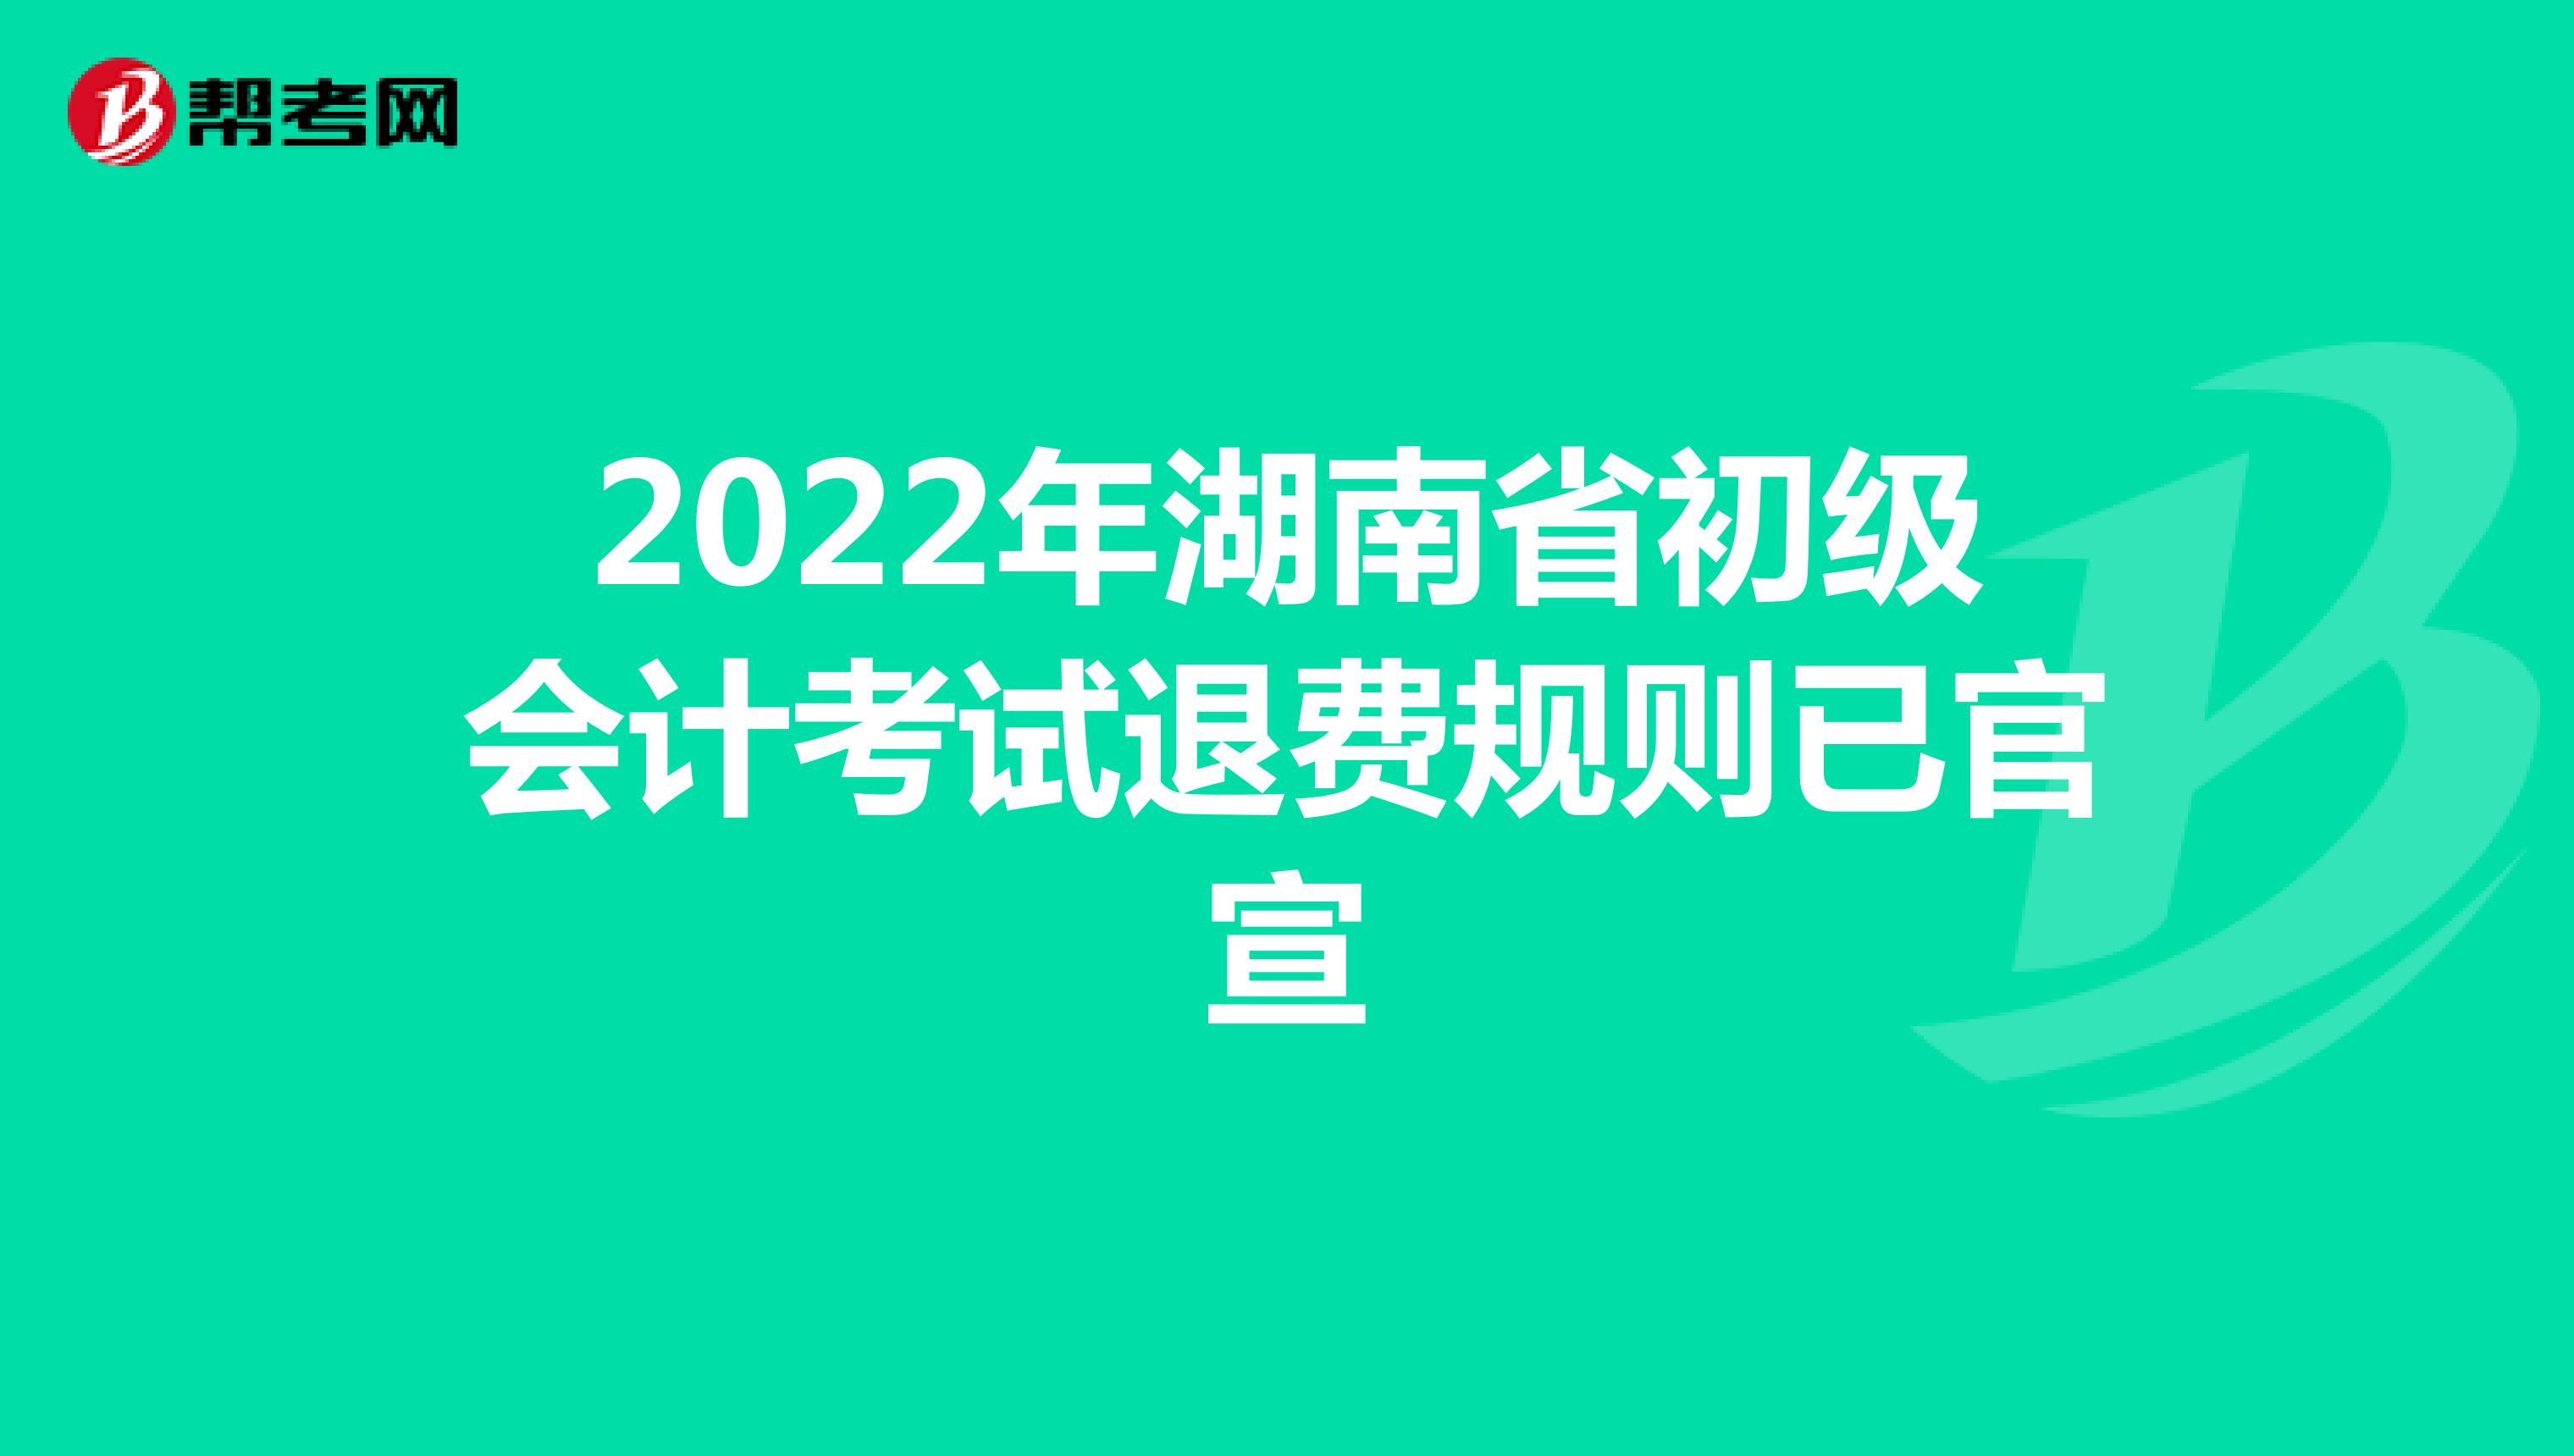 2022年湖南省初级会计考试退费规则已官宣